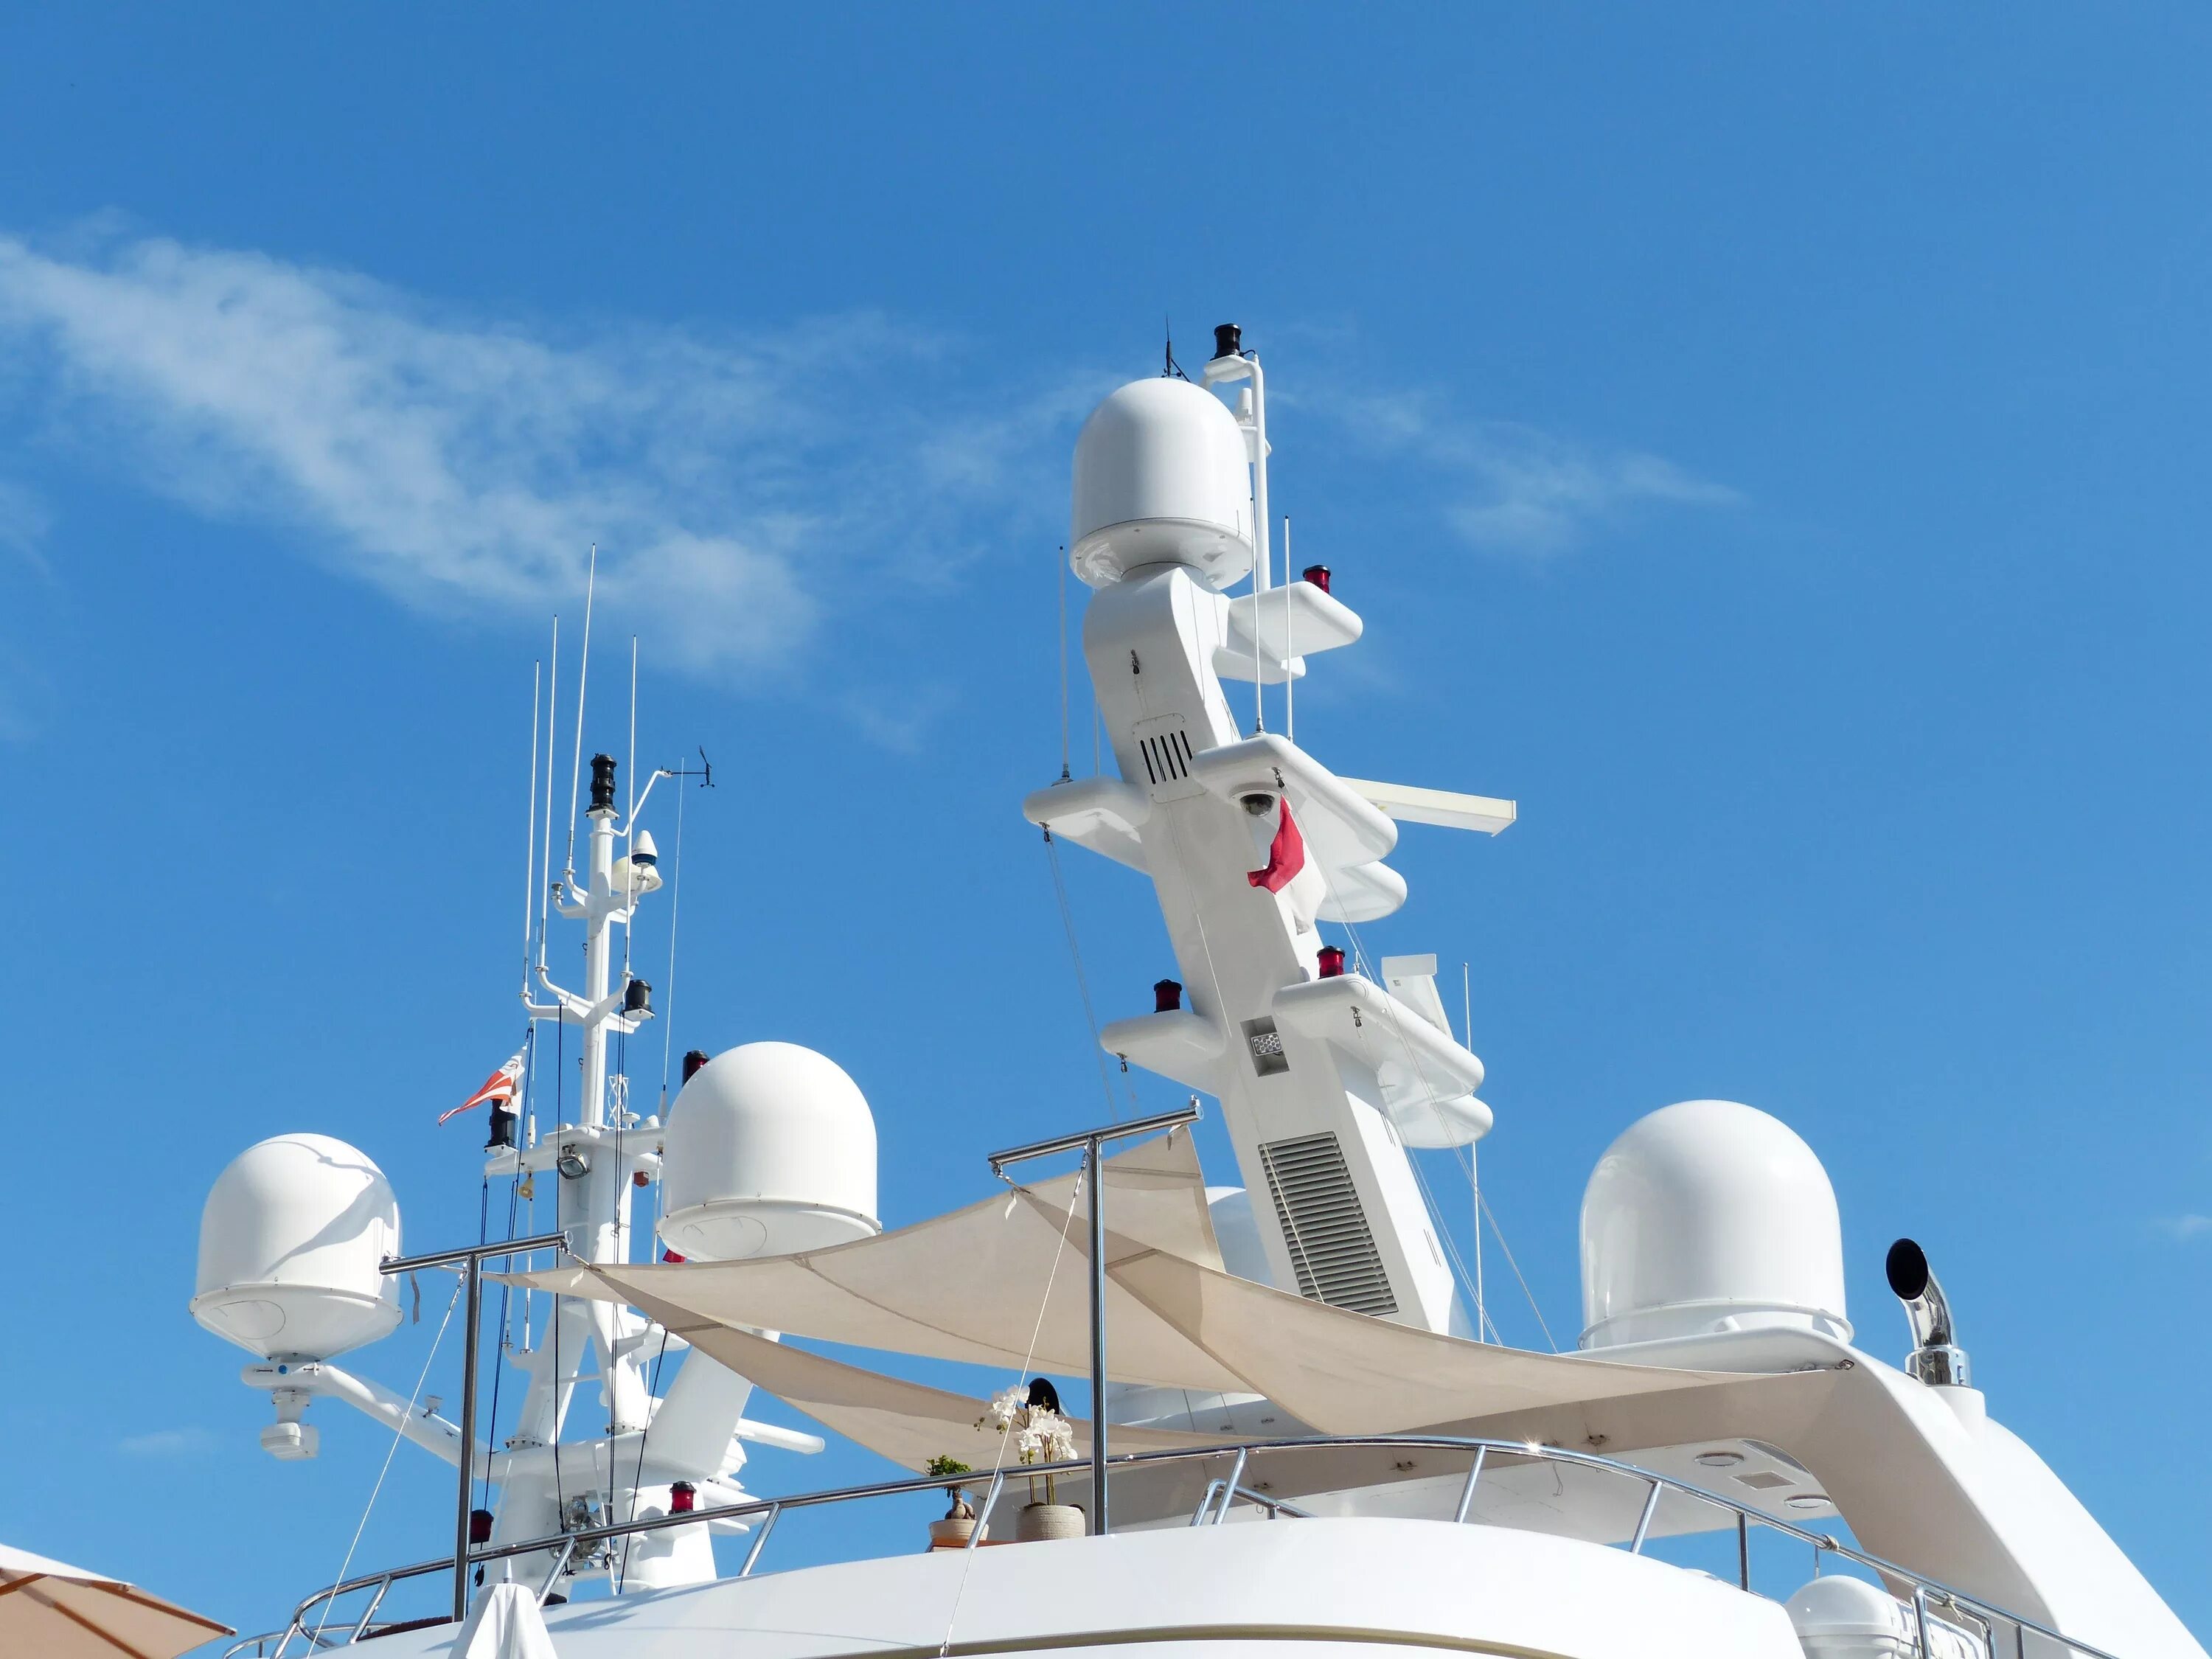 Какая мощность корабля. Антенна морская радиолокация. Судовой морской радар (Radar). РЛС антенна морская Корабельная. Радиолокатор на корабле.